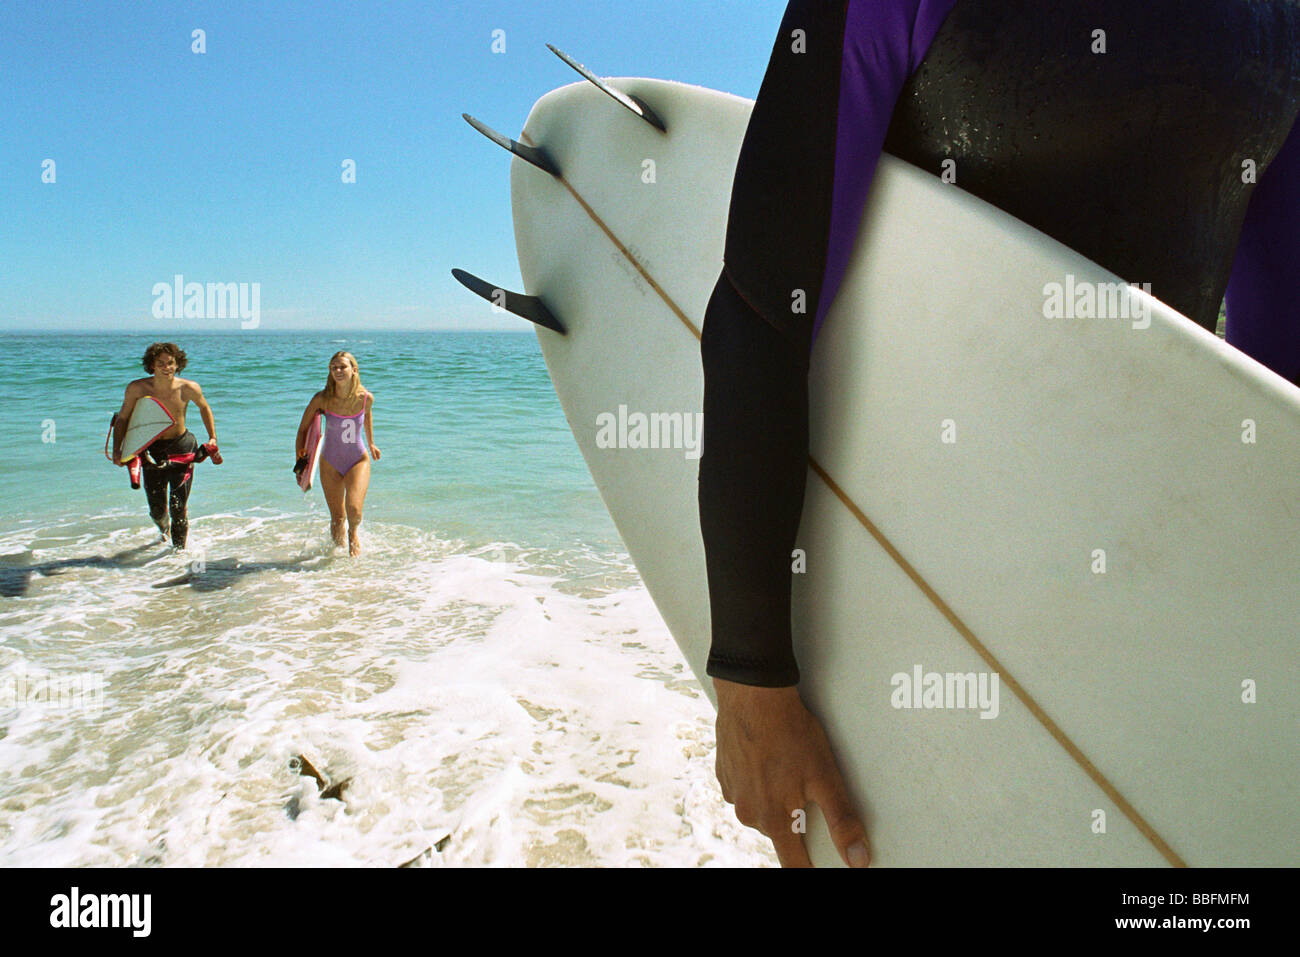 Surfer carrying board sous le bras, un couple sortant d'eau ensemble Banque D'Images